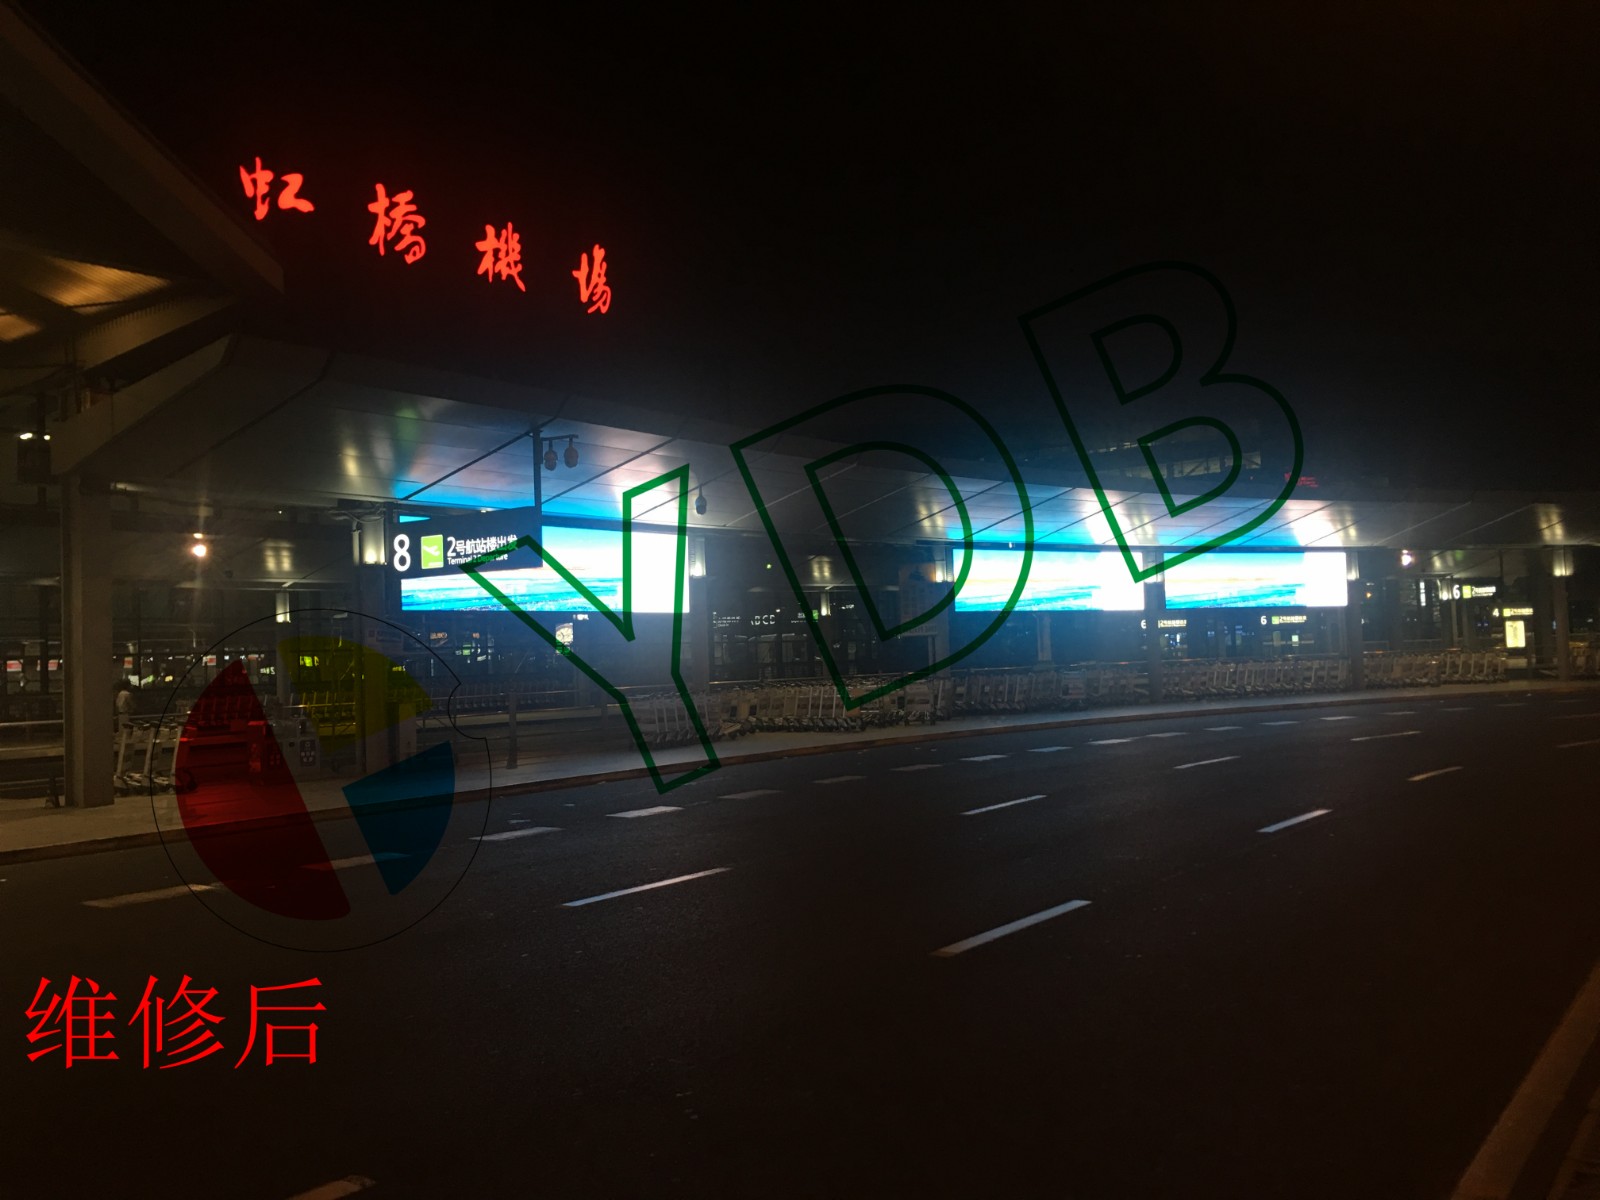 上海虹桥机场LED显示屏维保项目